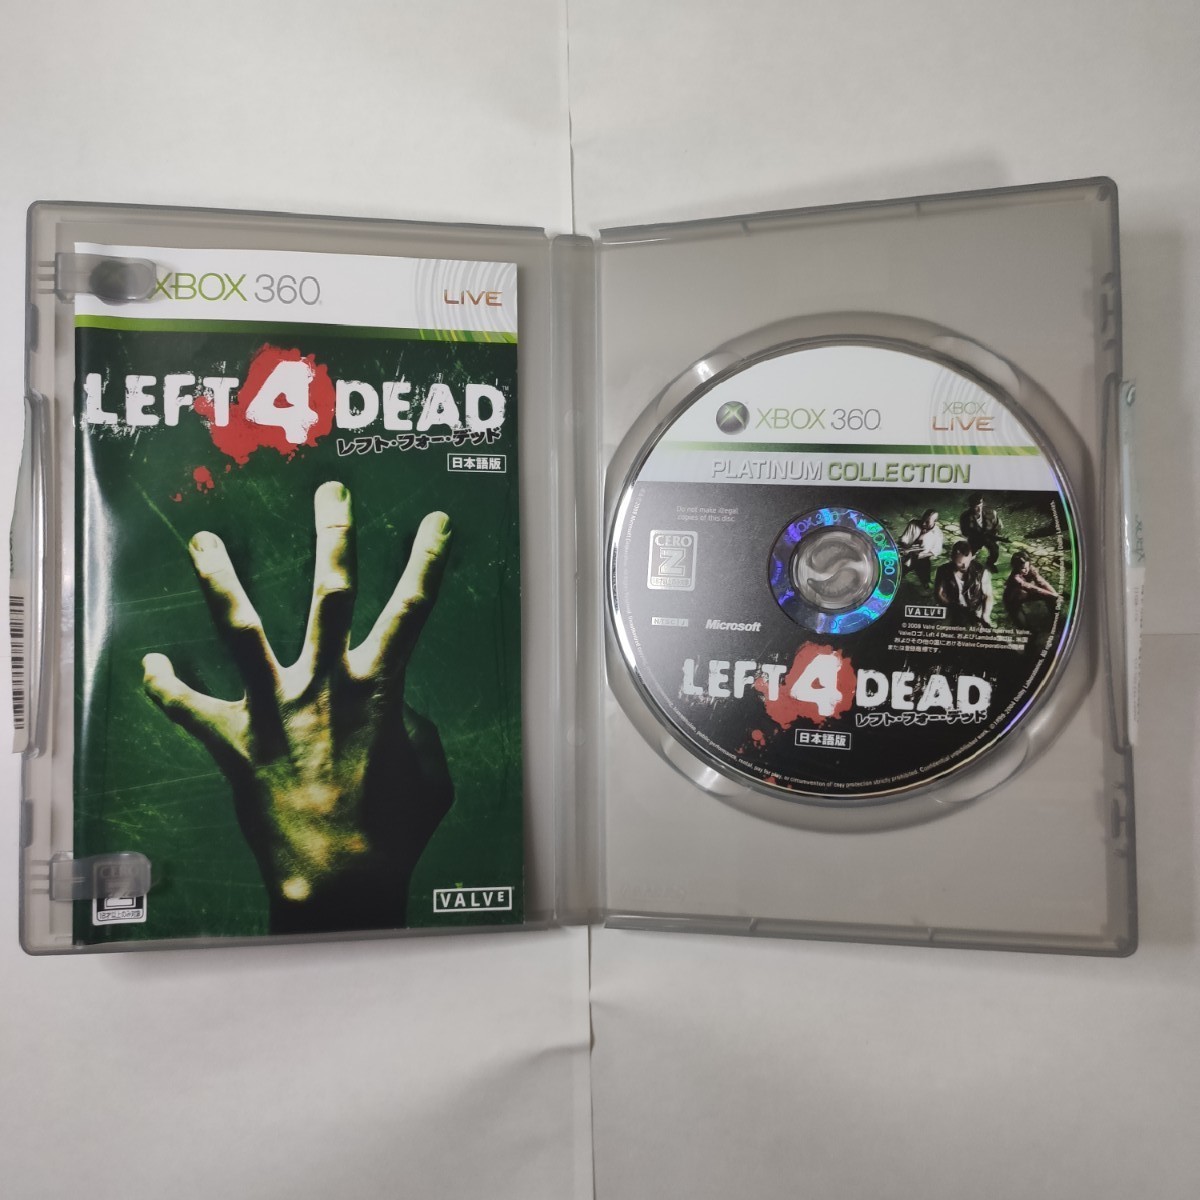 LEFT 4 DEAD XBOX360